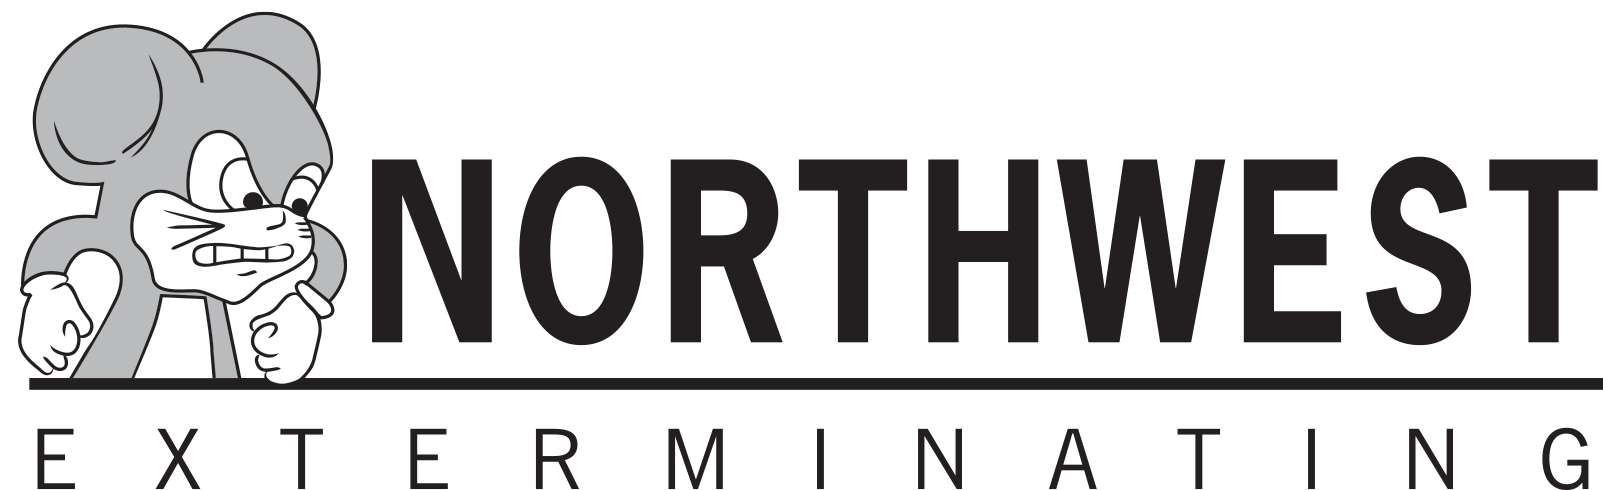 Logo of Northwest Exterminating